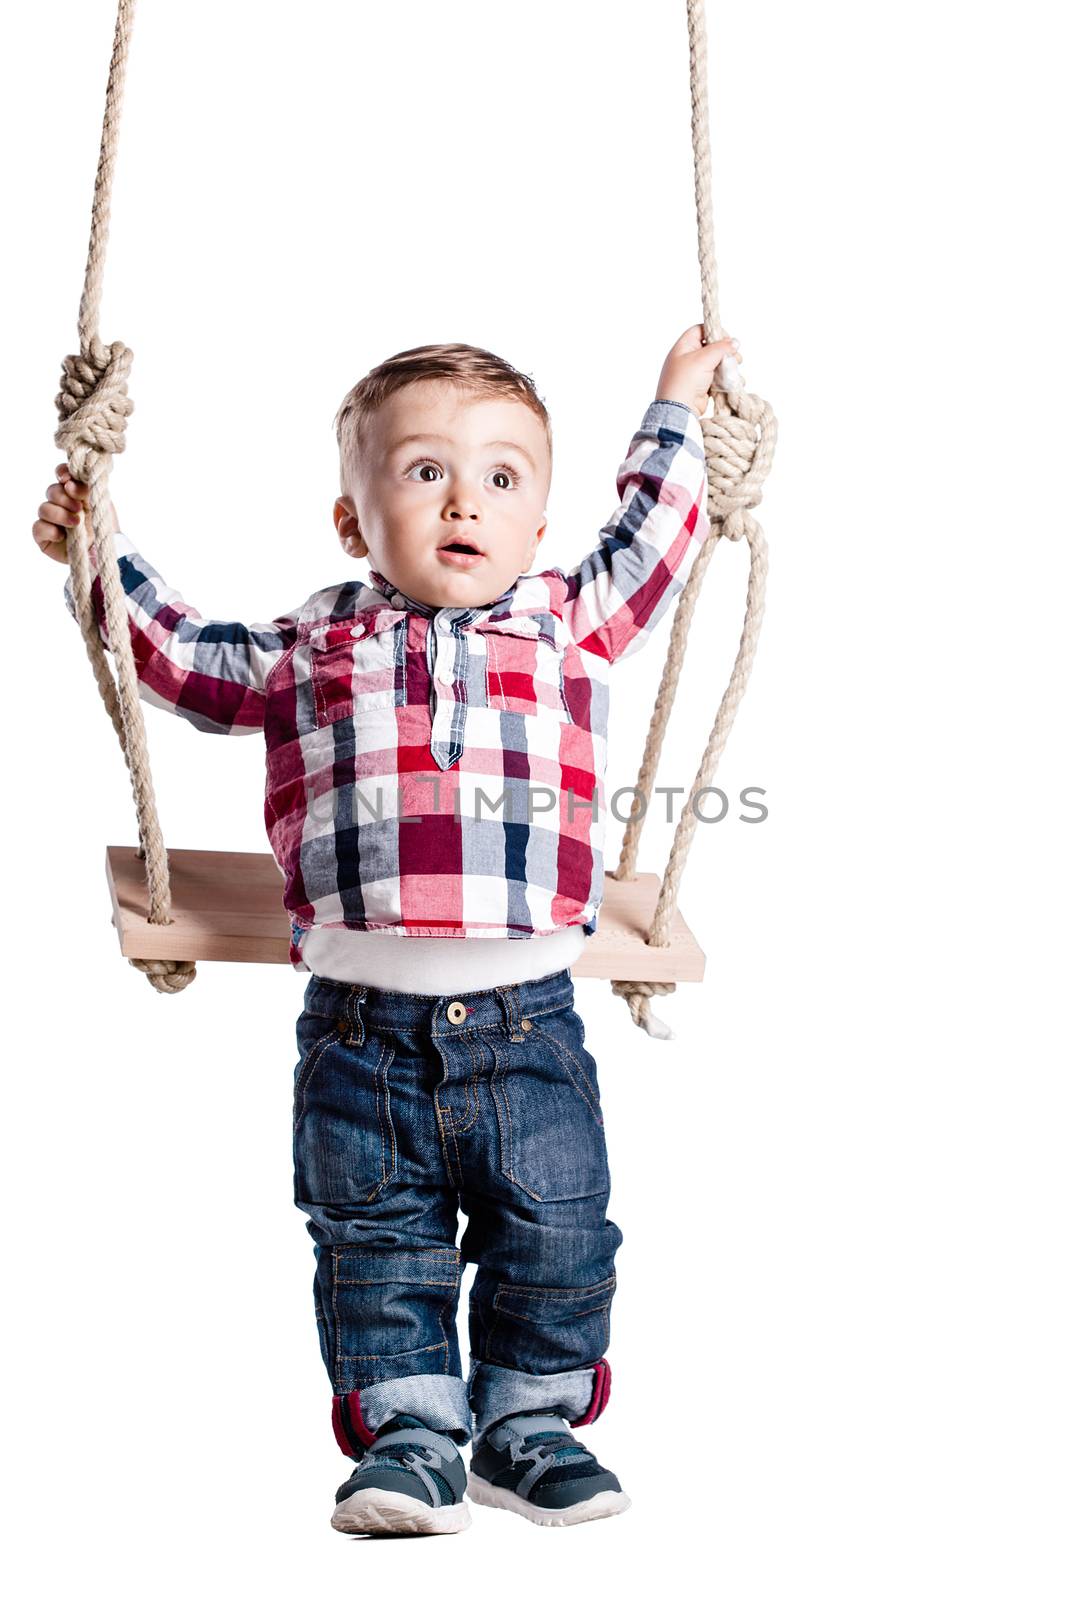 happy little boy swinging on a wooden swing